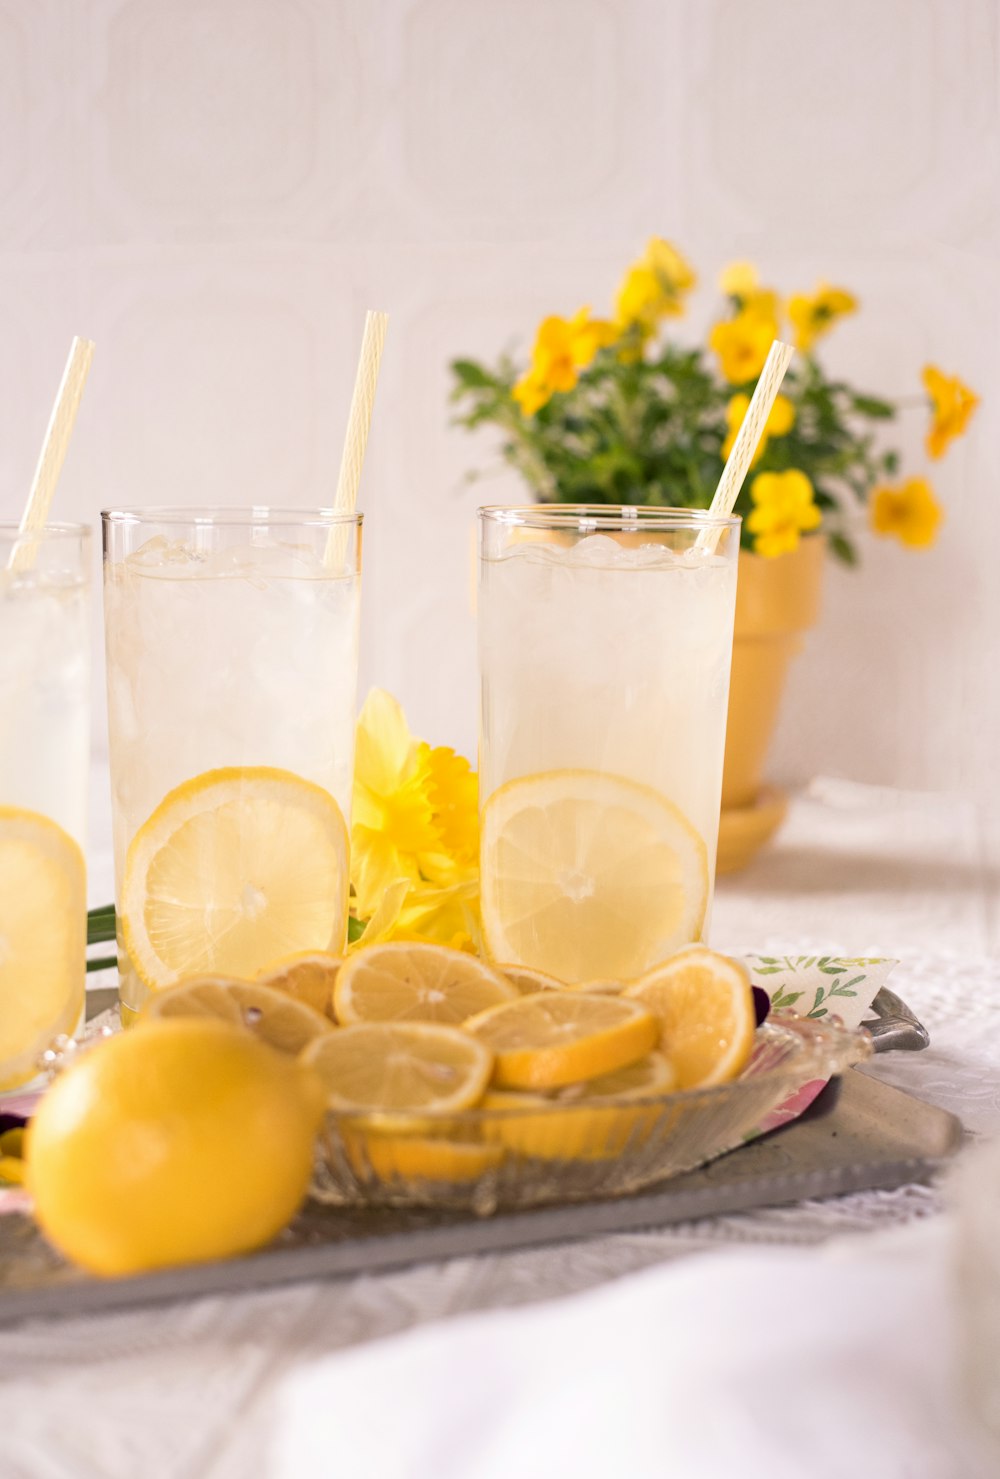 rodajas de limón junto a dos vasos transparentes